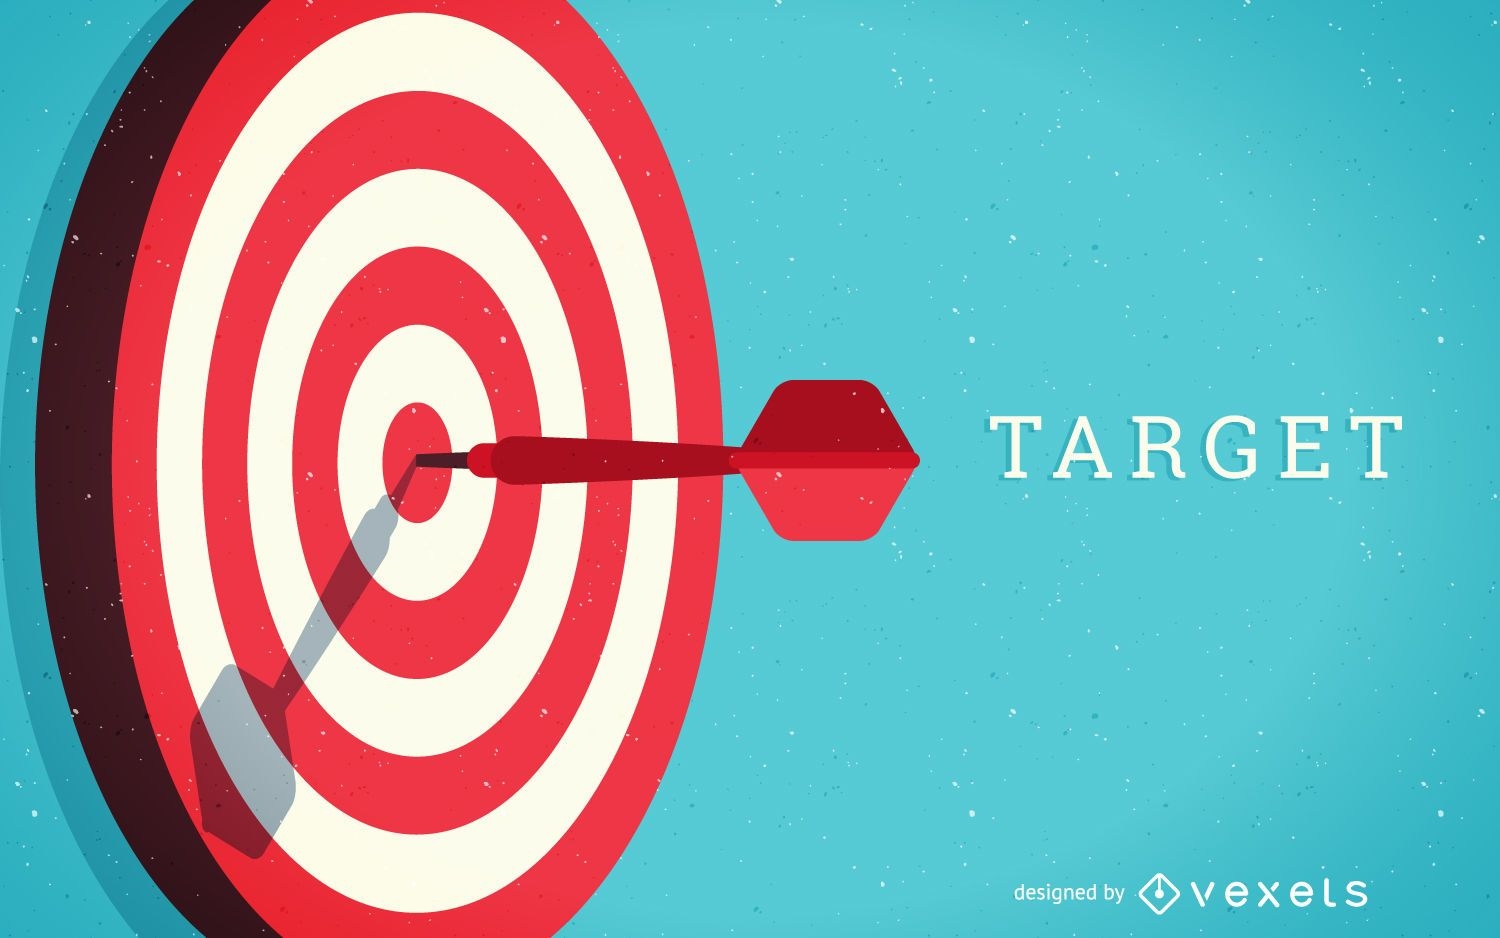 Target concept illustration